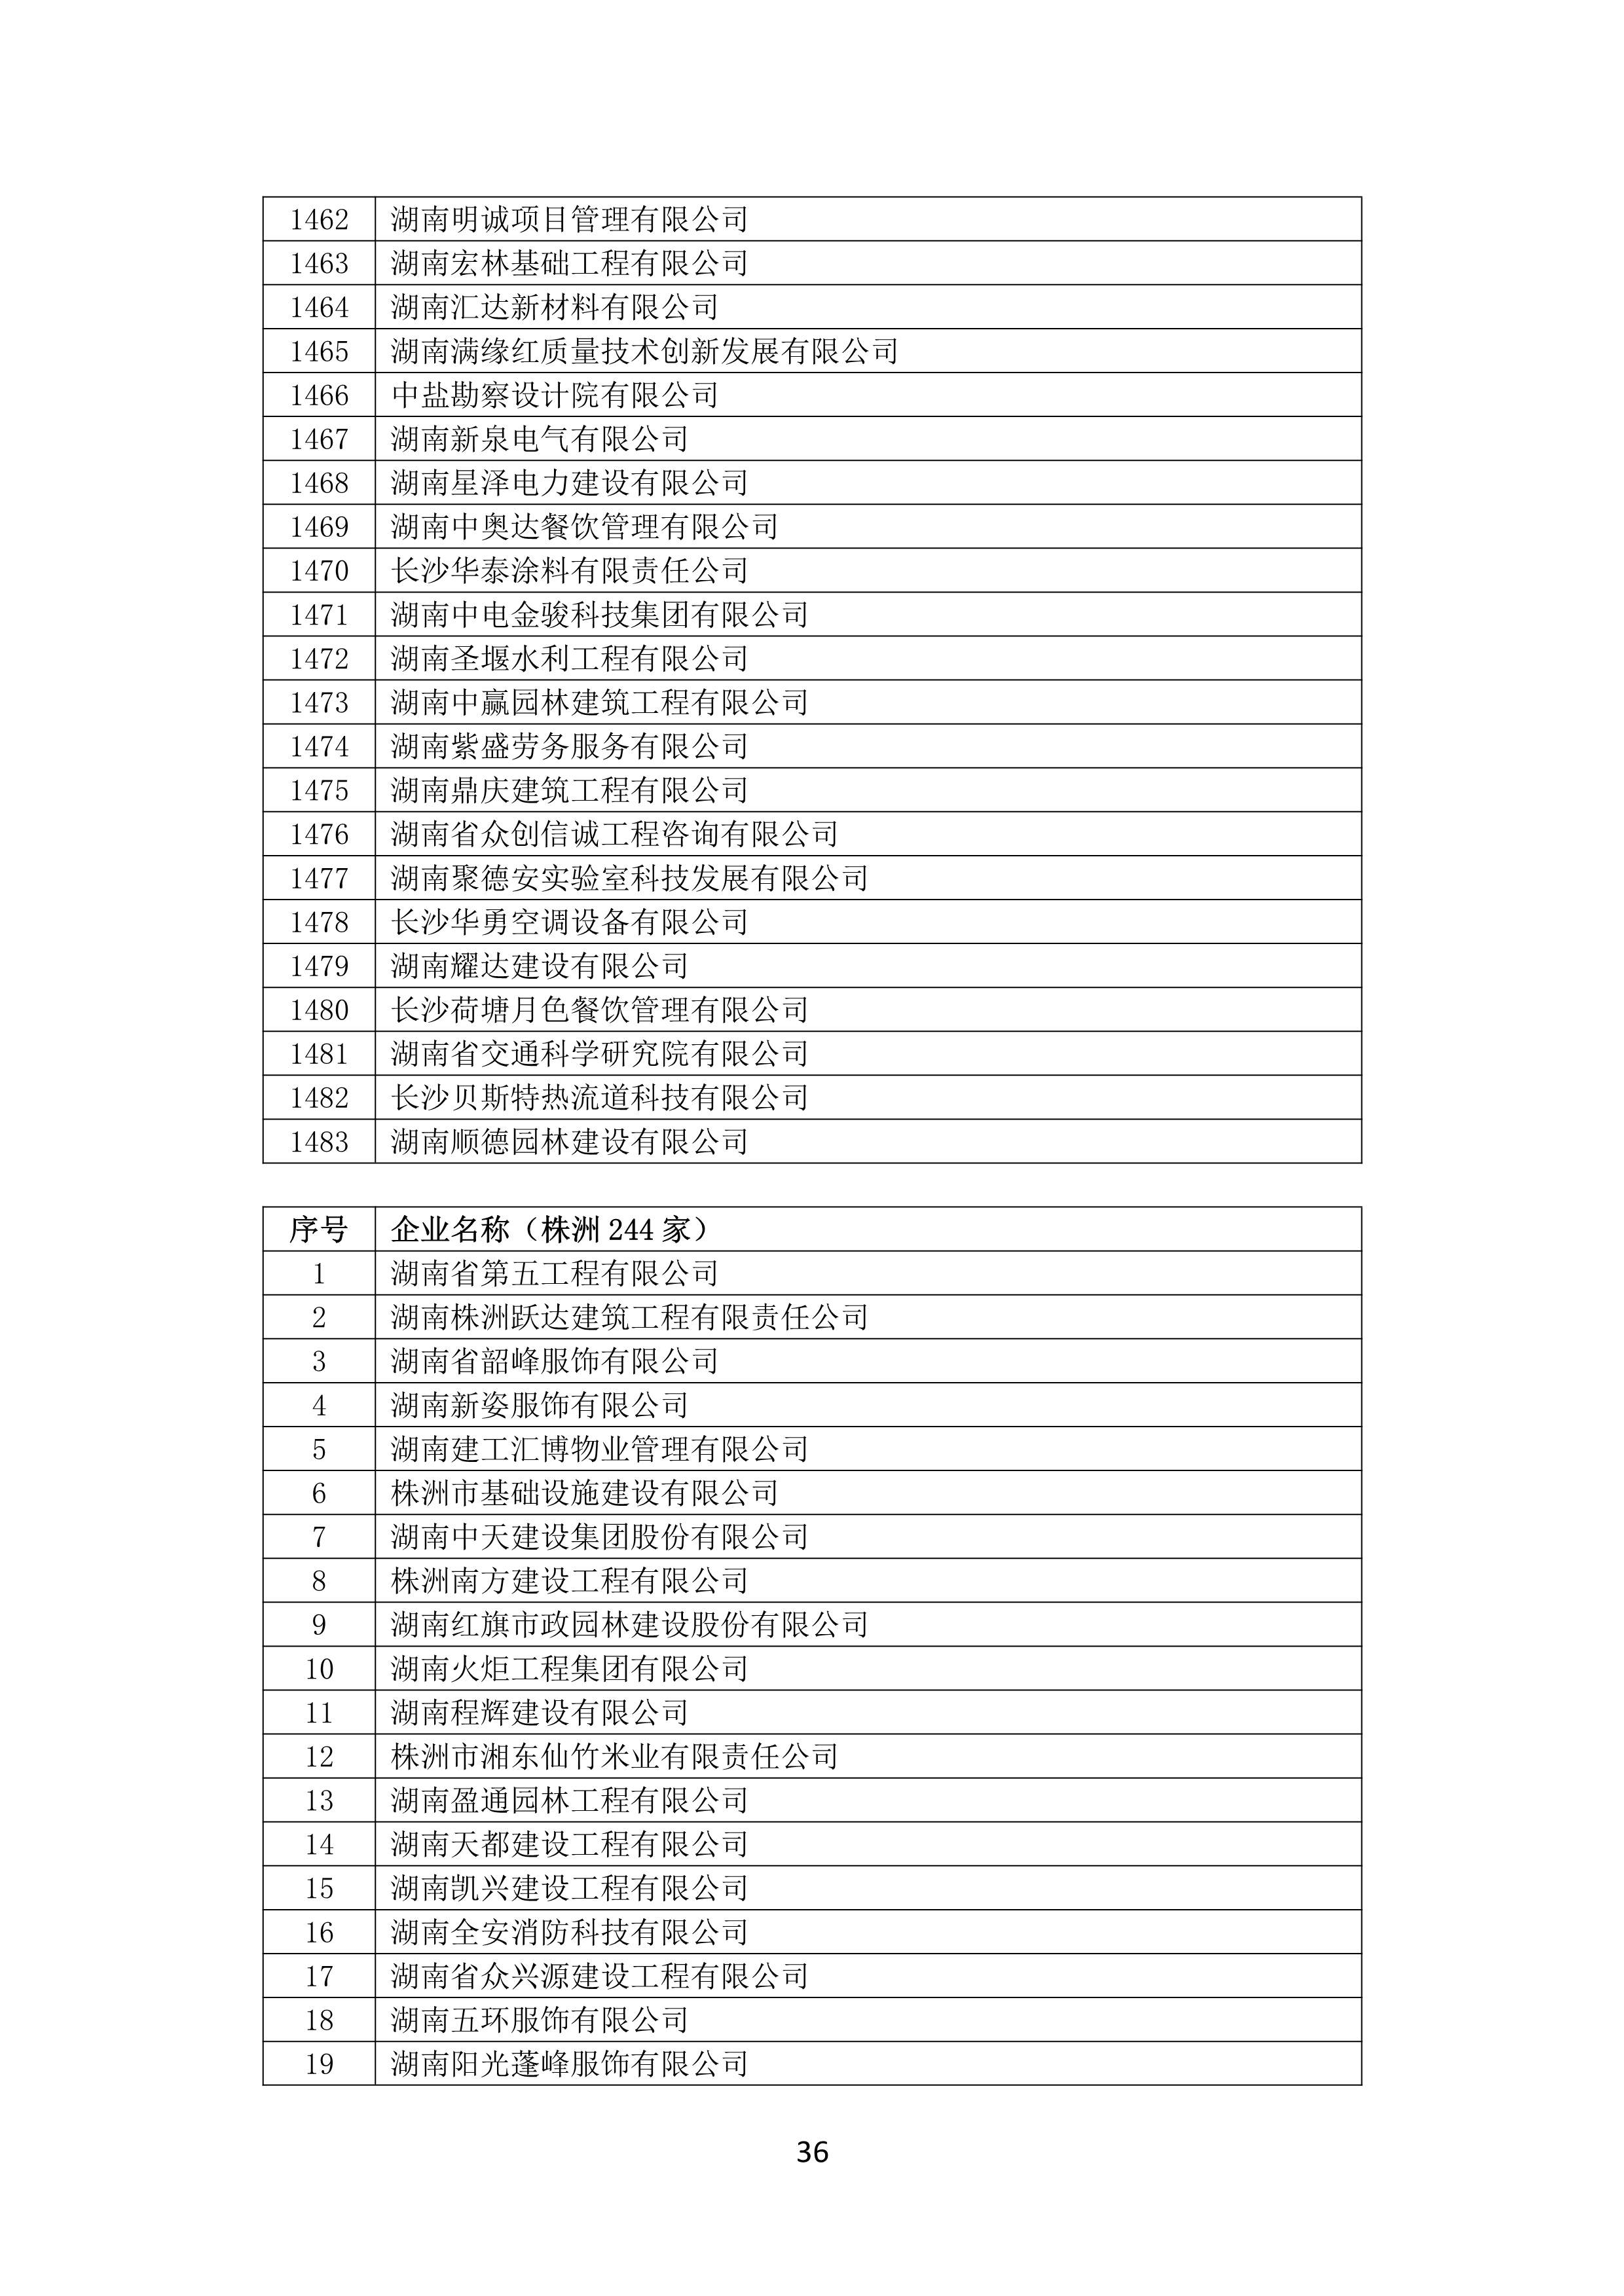 2021 年(nián)度湖南省守合同重信用企業名單_37.png